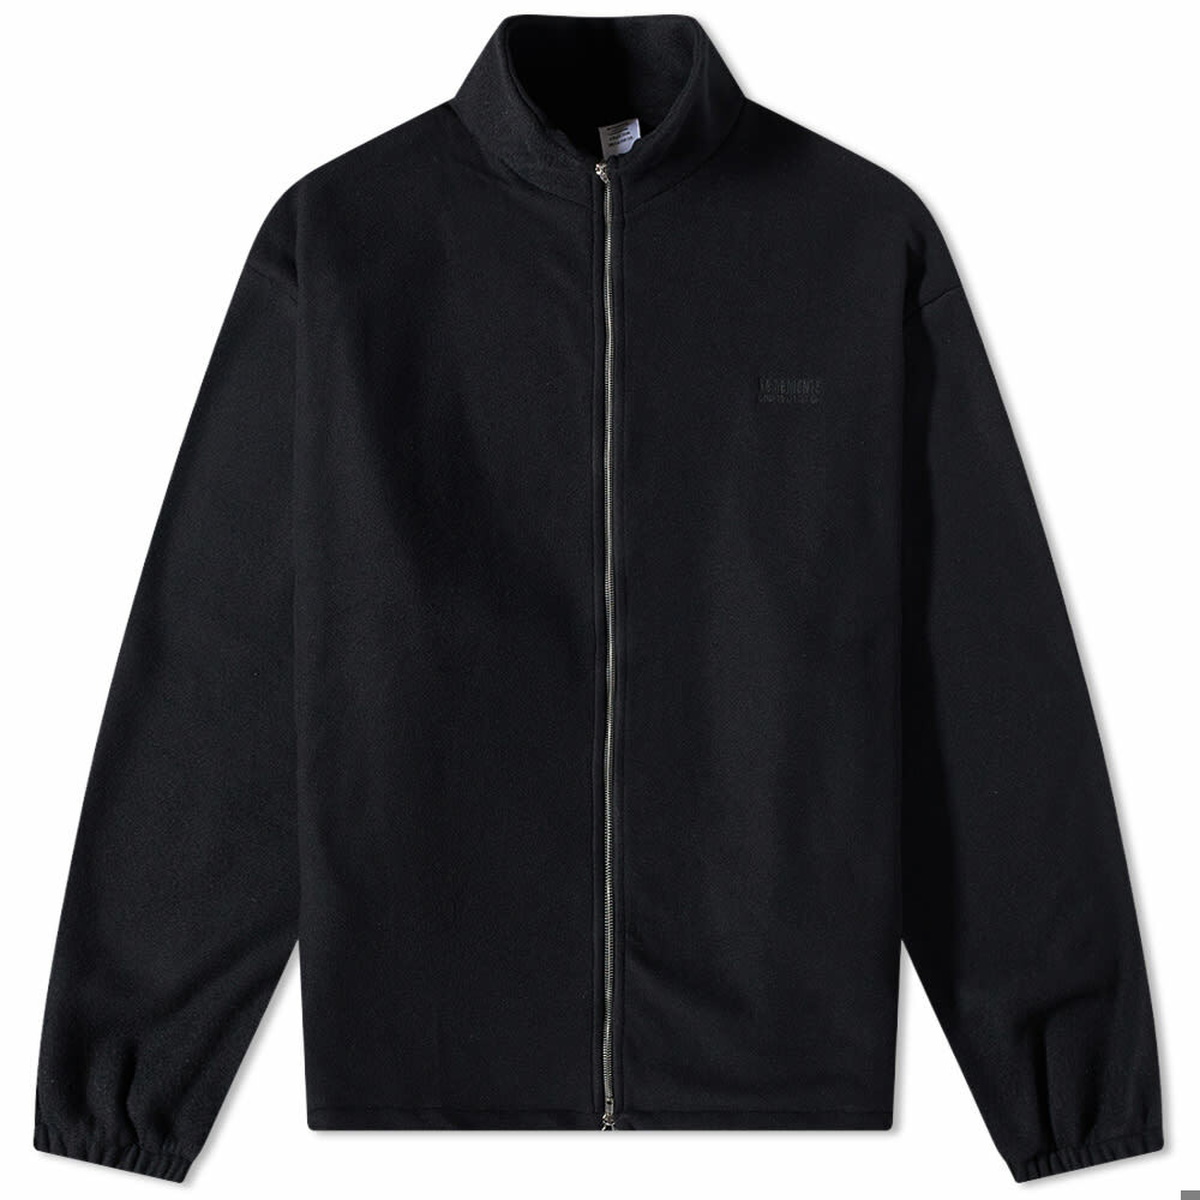 Vetements Men's Fleece Zip Up Jacket in Black Vetements